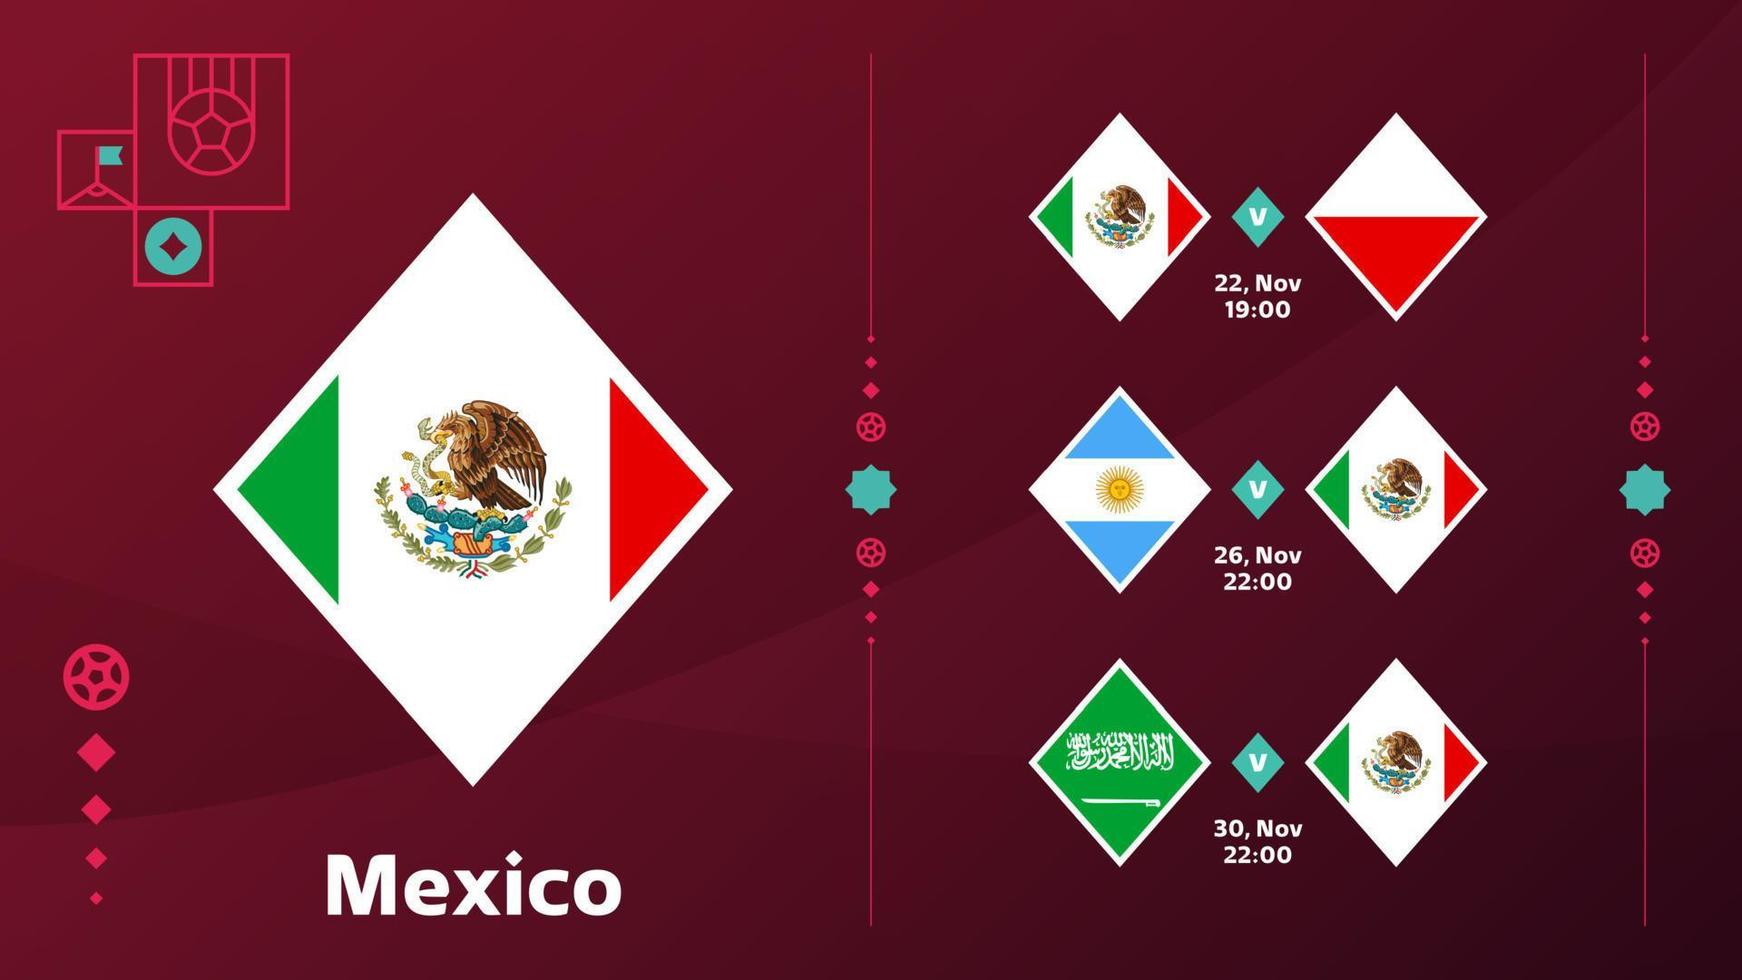 Mexico nationaal team schema wedstrijden in de laatste stadium Bij de 2022 Amerikaans voetbal wereld kampioenschap. vector illustratie van wereld Amerikaans voetbal 2022 wedstrijden.